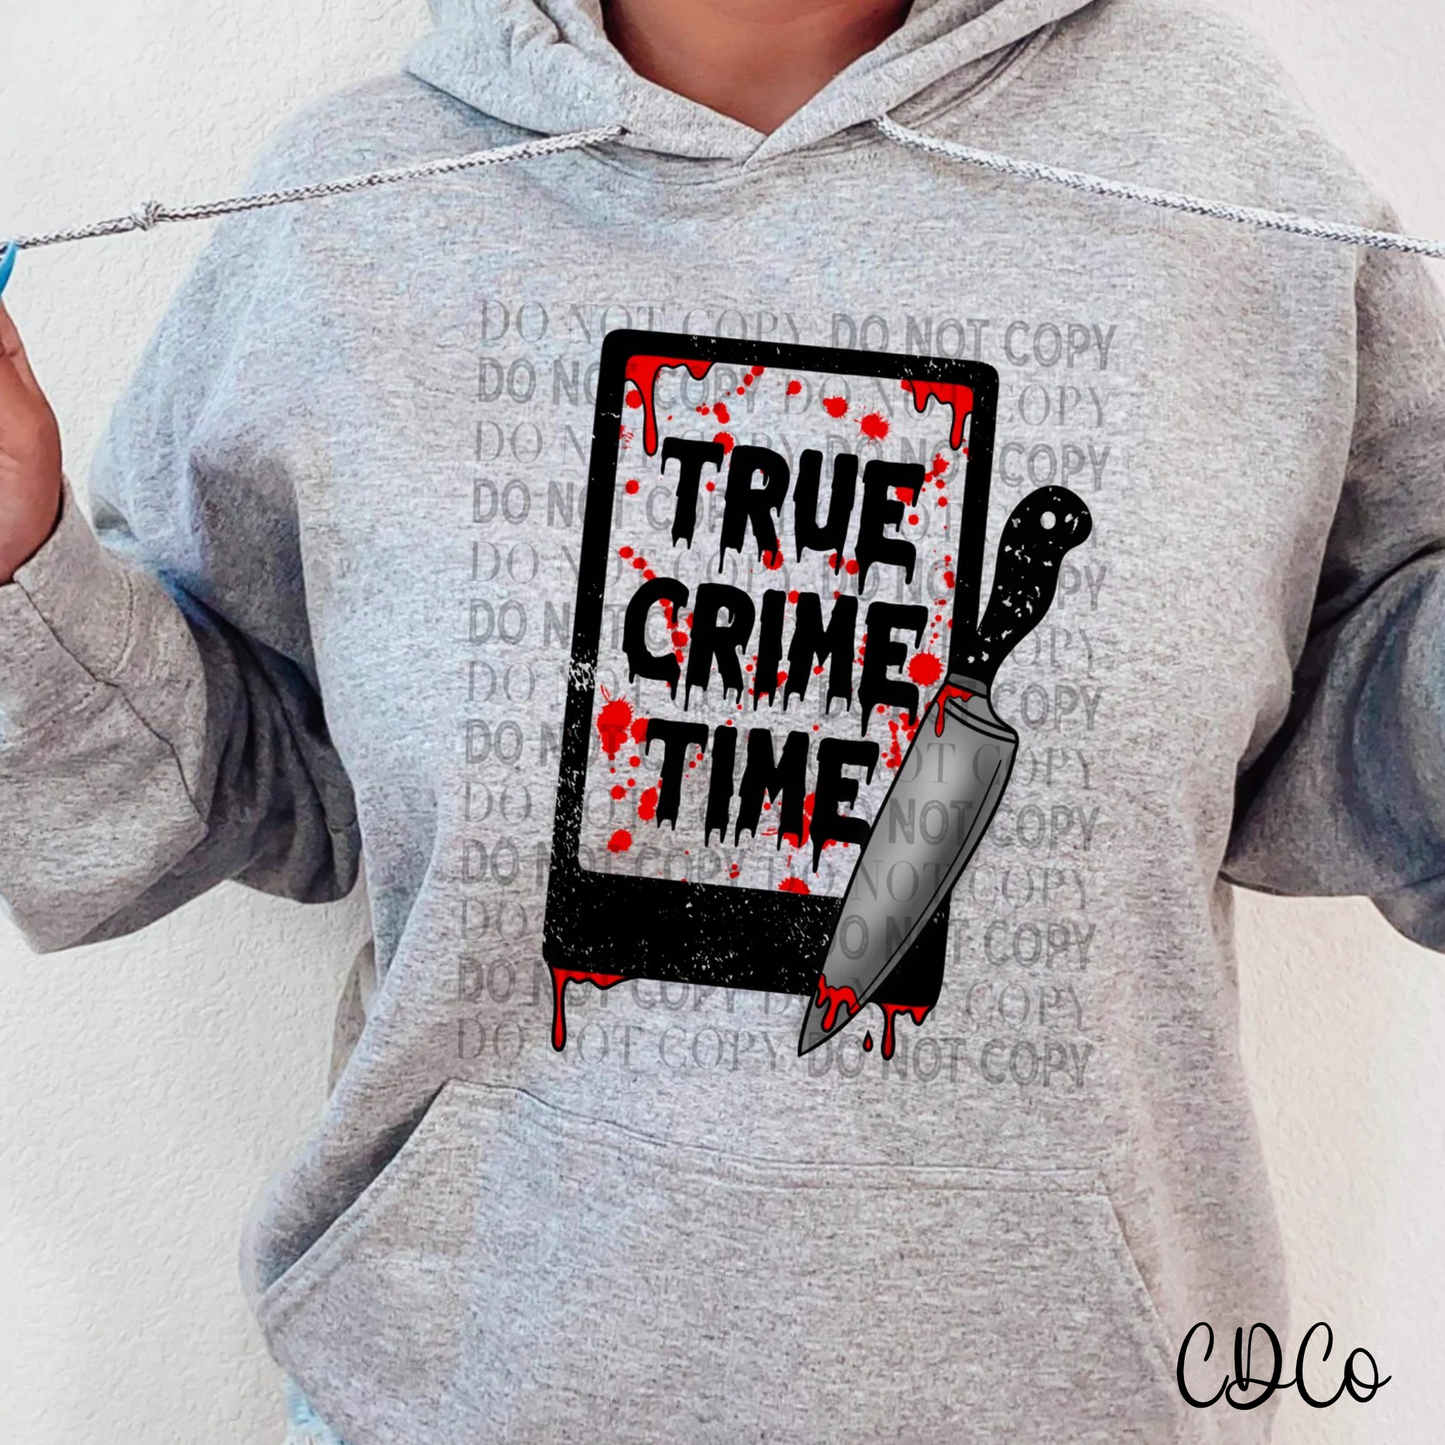 True Crime Time DTF (320°)